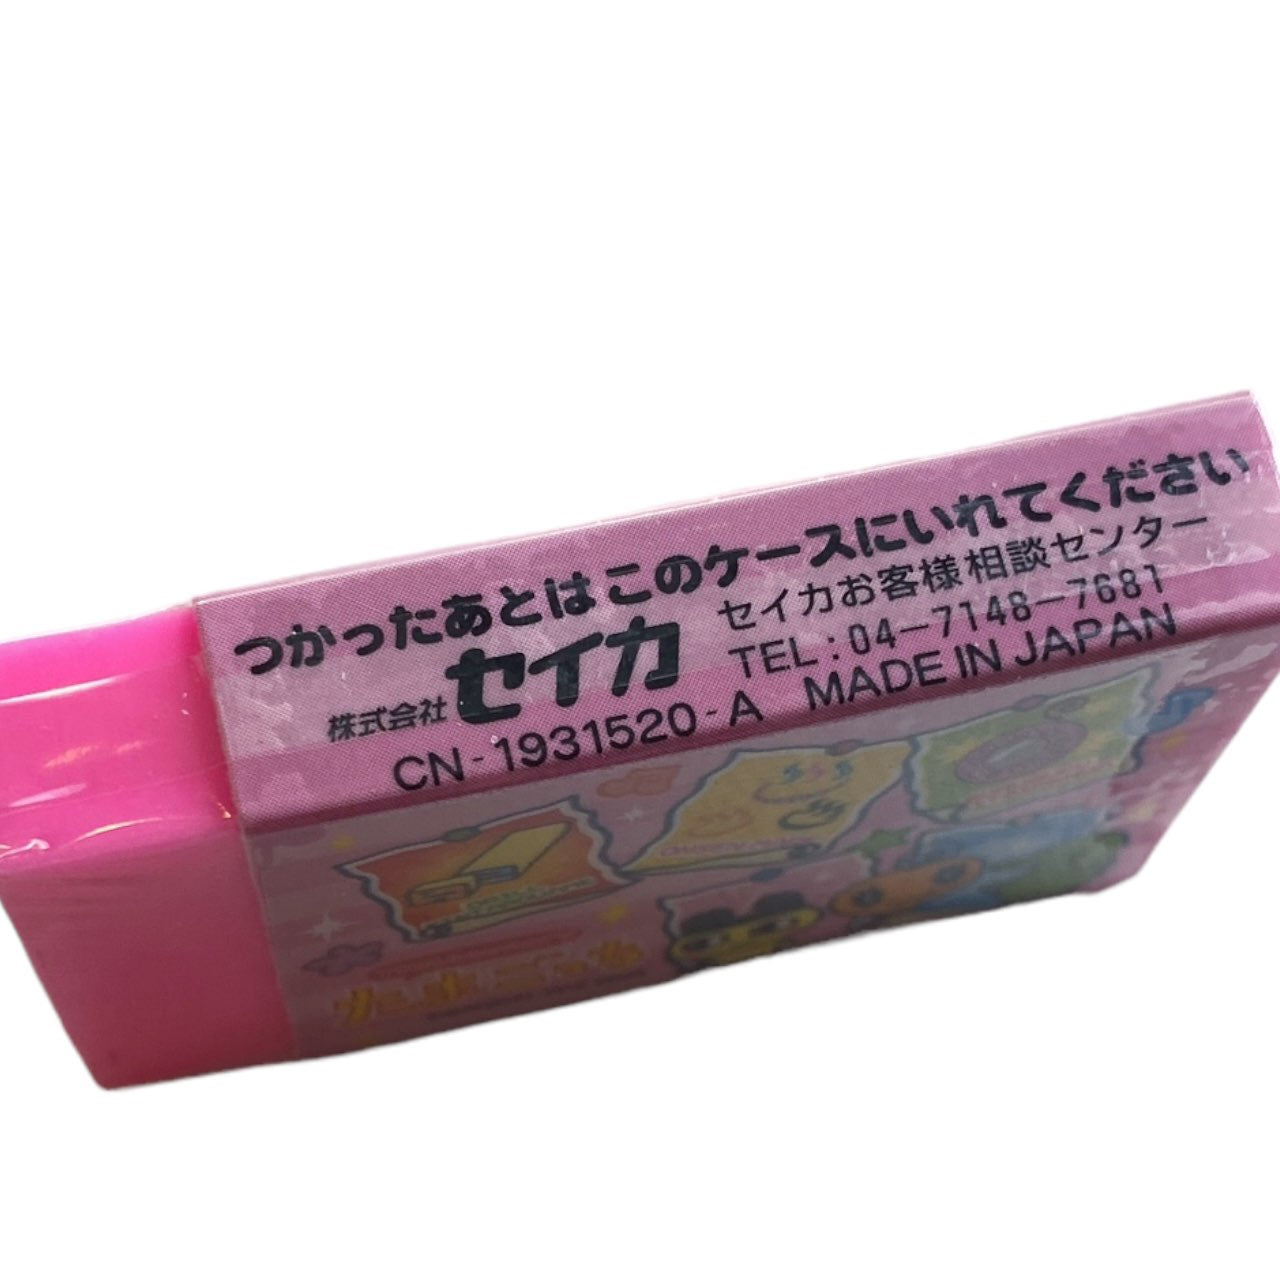 2004 Vintage Tamagotchi Characters Eraser